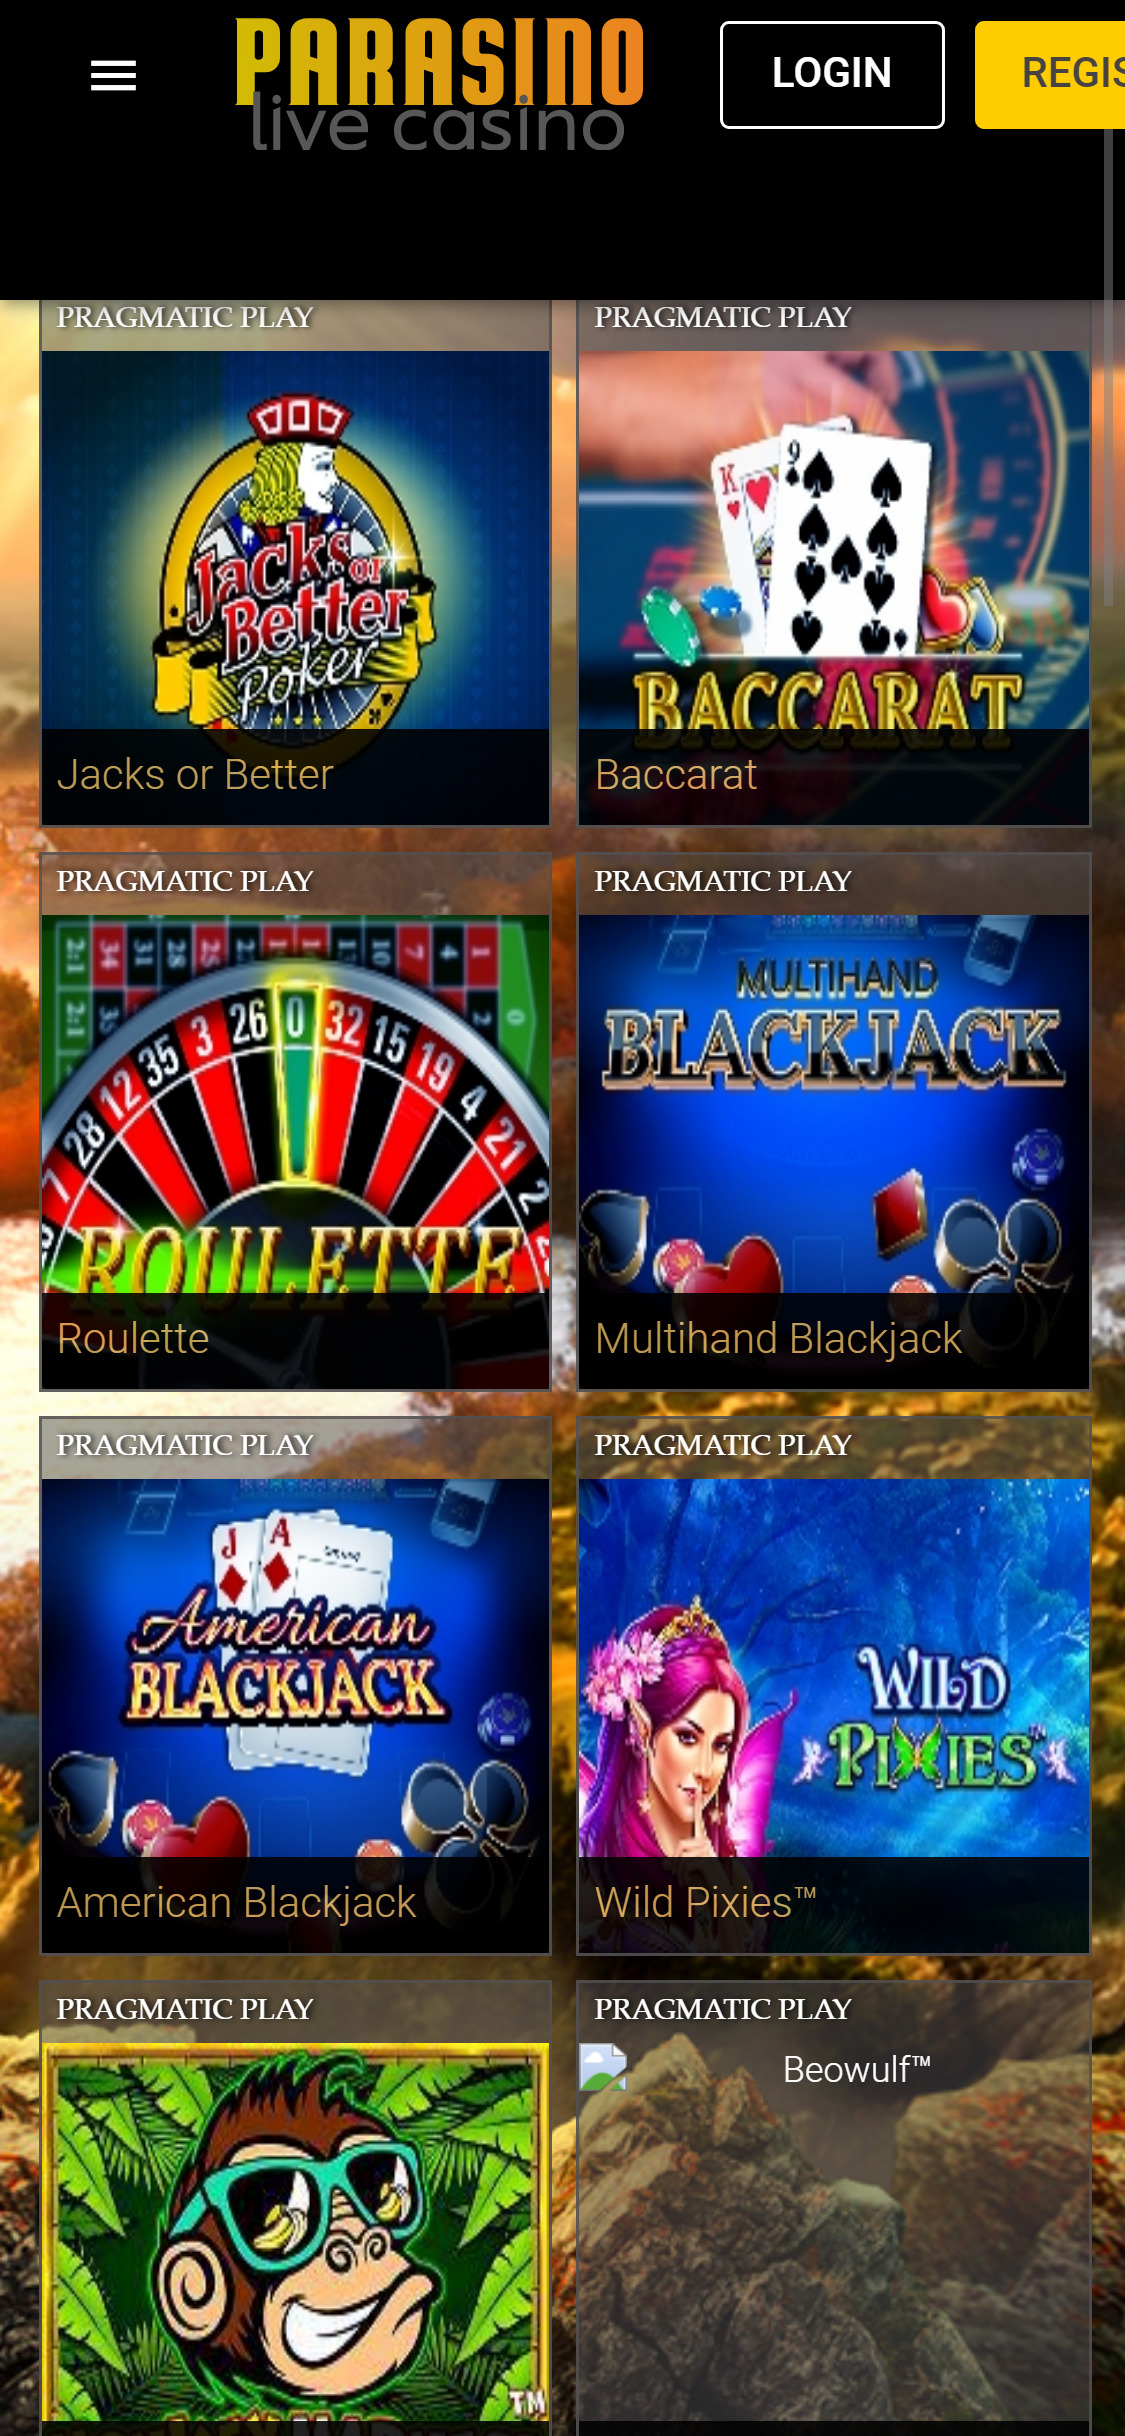 Parasino Casino Mobile Games Review